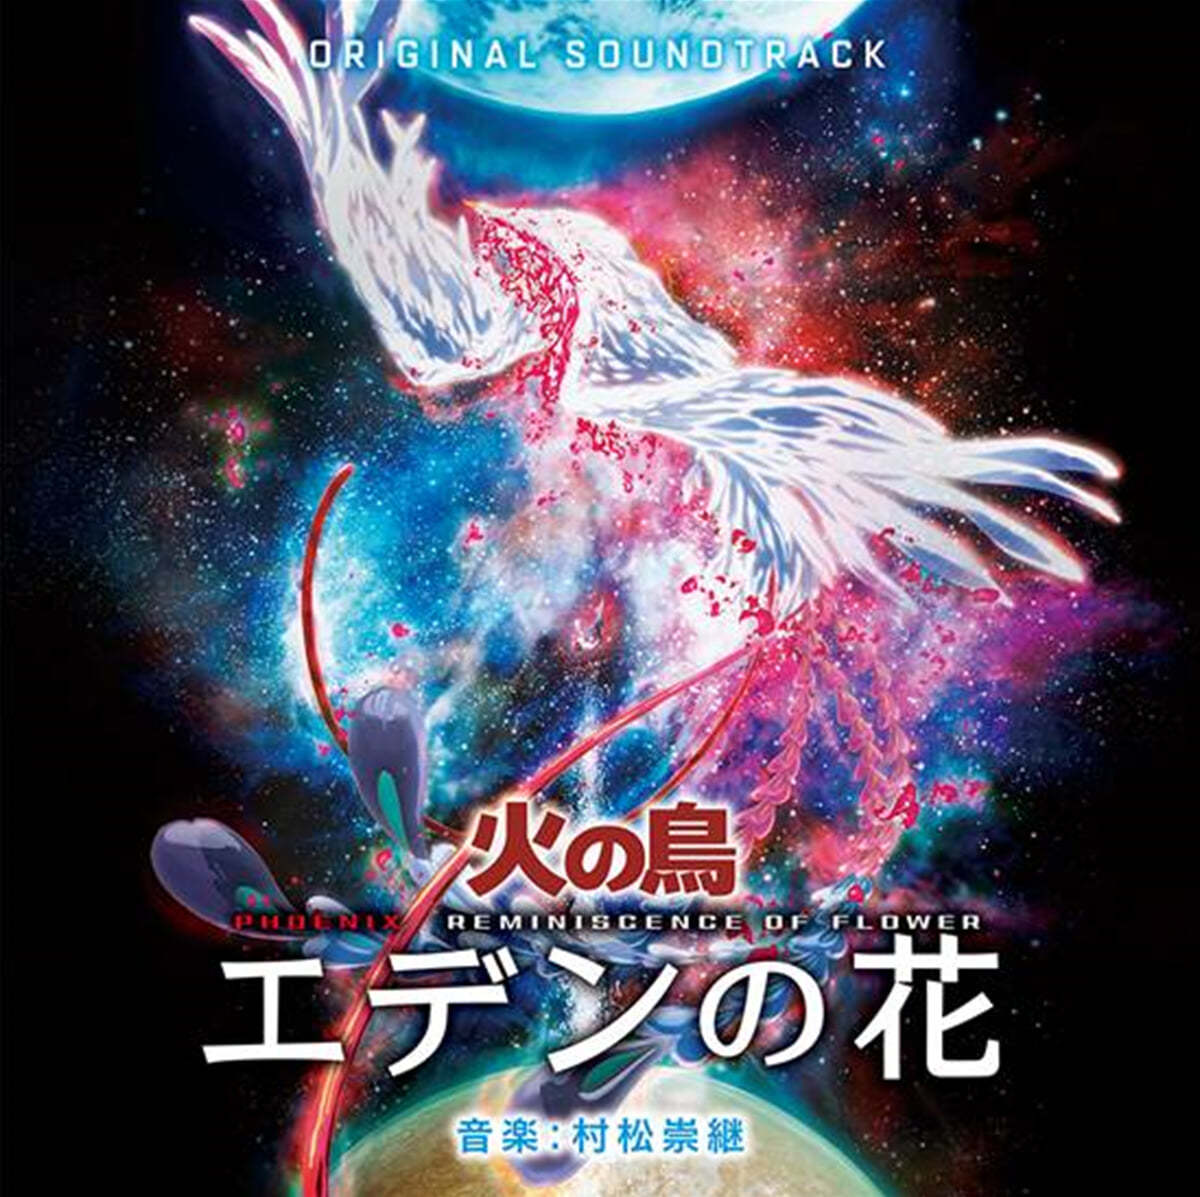 불새: 에덴의 꽃 애니메이션 음악 (Phoenix: Reminiscence of Flower OST by Takatsugu Muramatsu) [2LP]